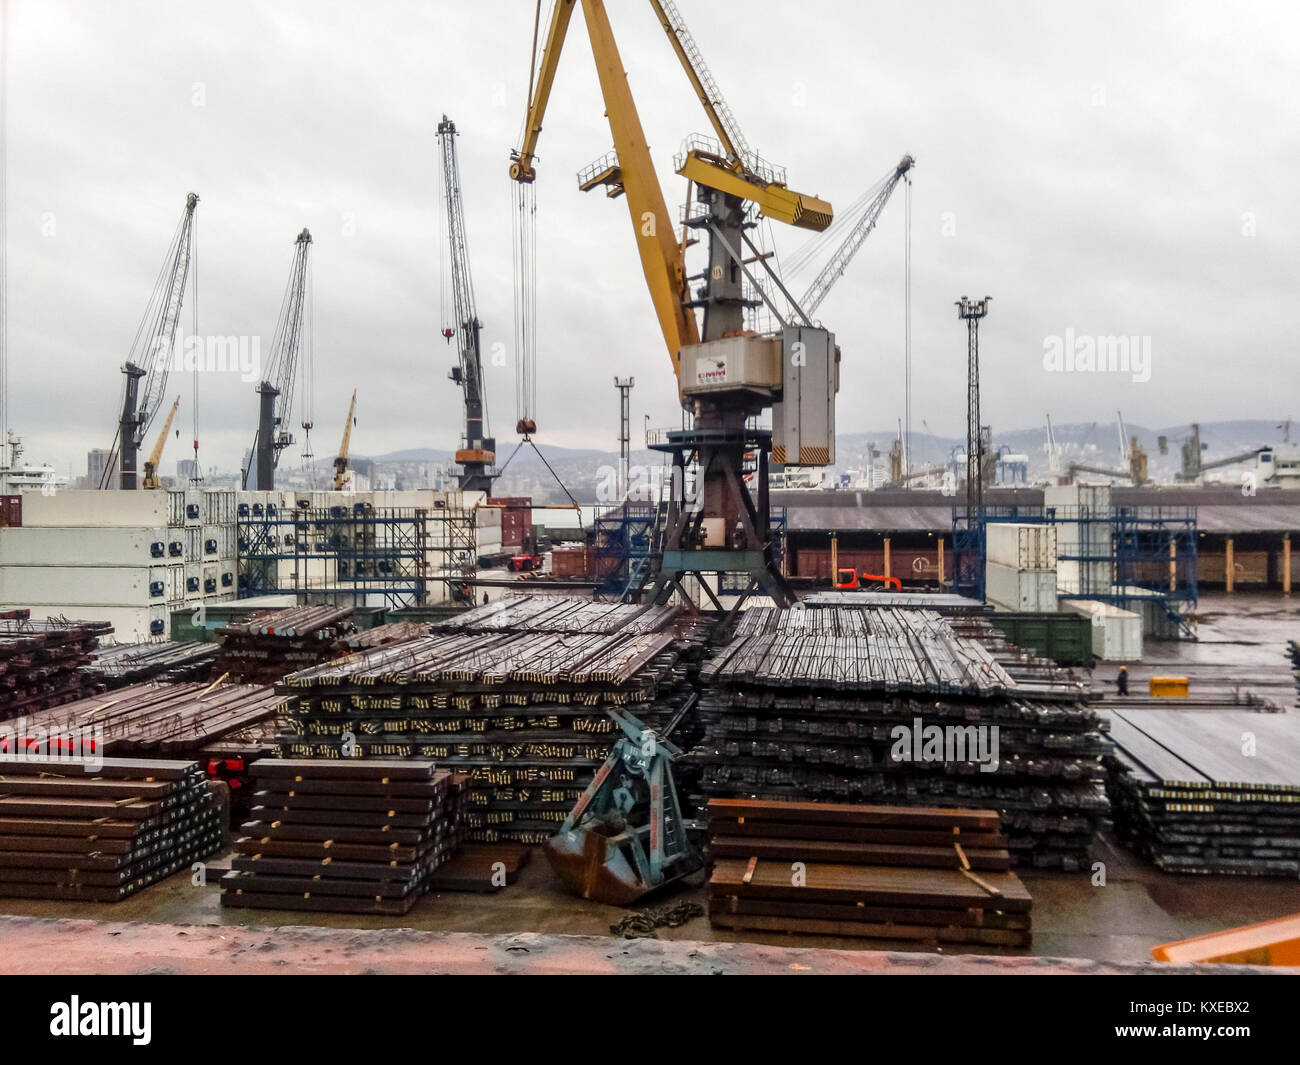 Noworossijsk, Russland - 20. August 2017: Die metallstäbe auf dem Port site für den Export gefaltet. Vorübergehende Lagerung im Hafen von Rohstoffen. Port Cargo Stockfoto